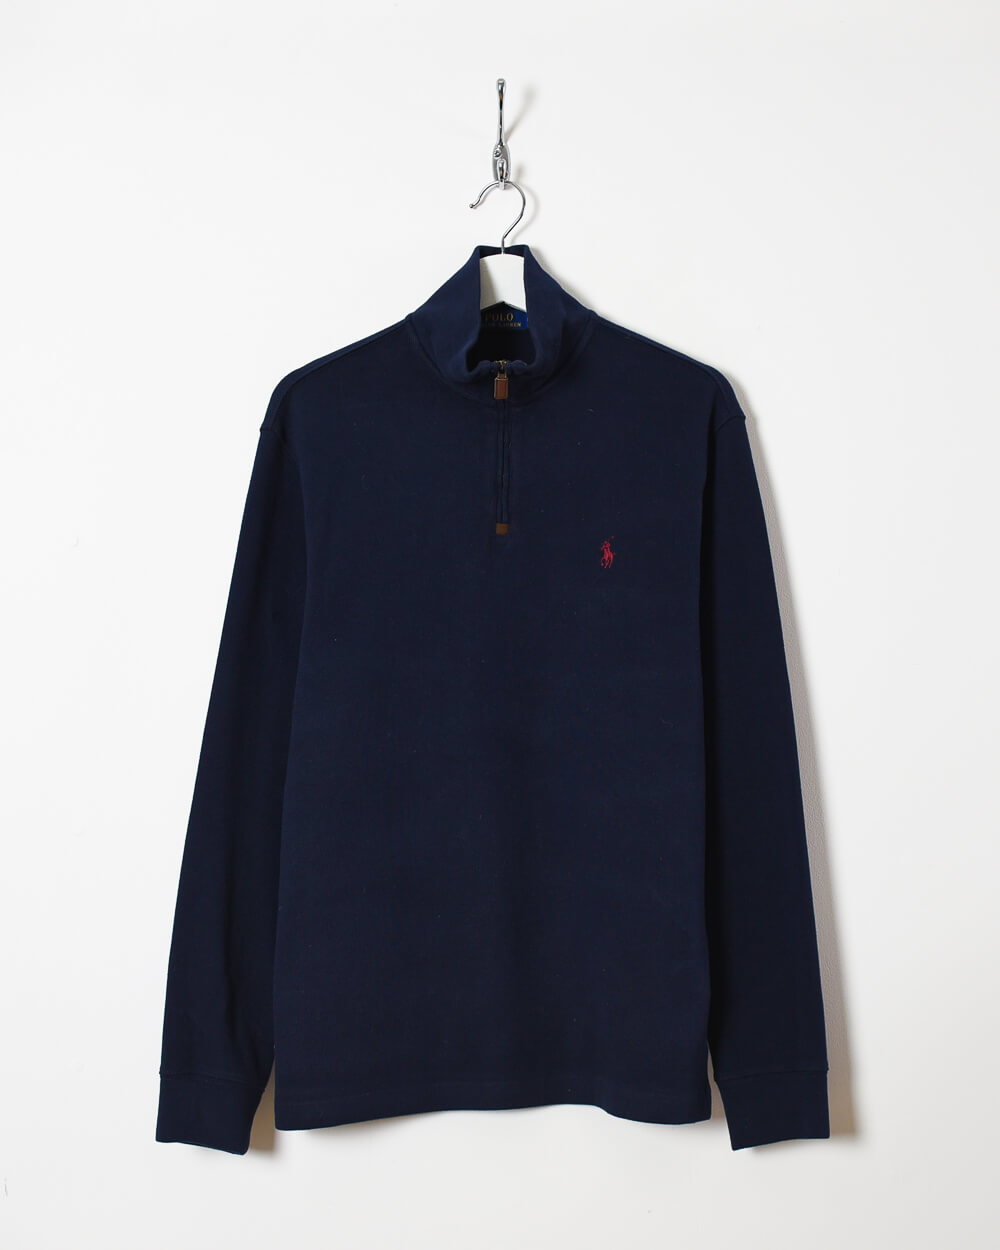 Navy Ralph Lauren 1/4 Zip Sweatshirt - Medium